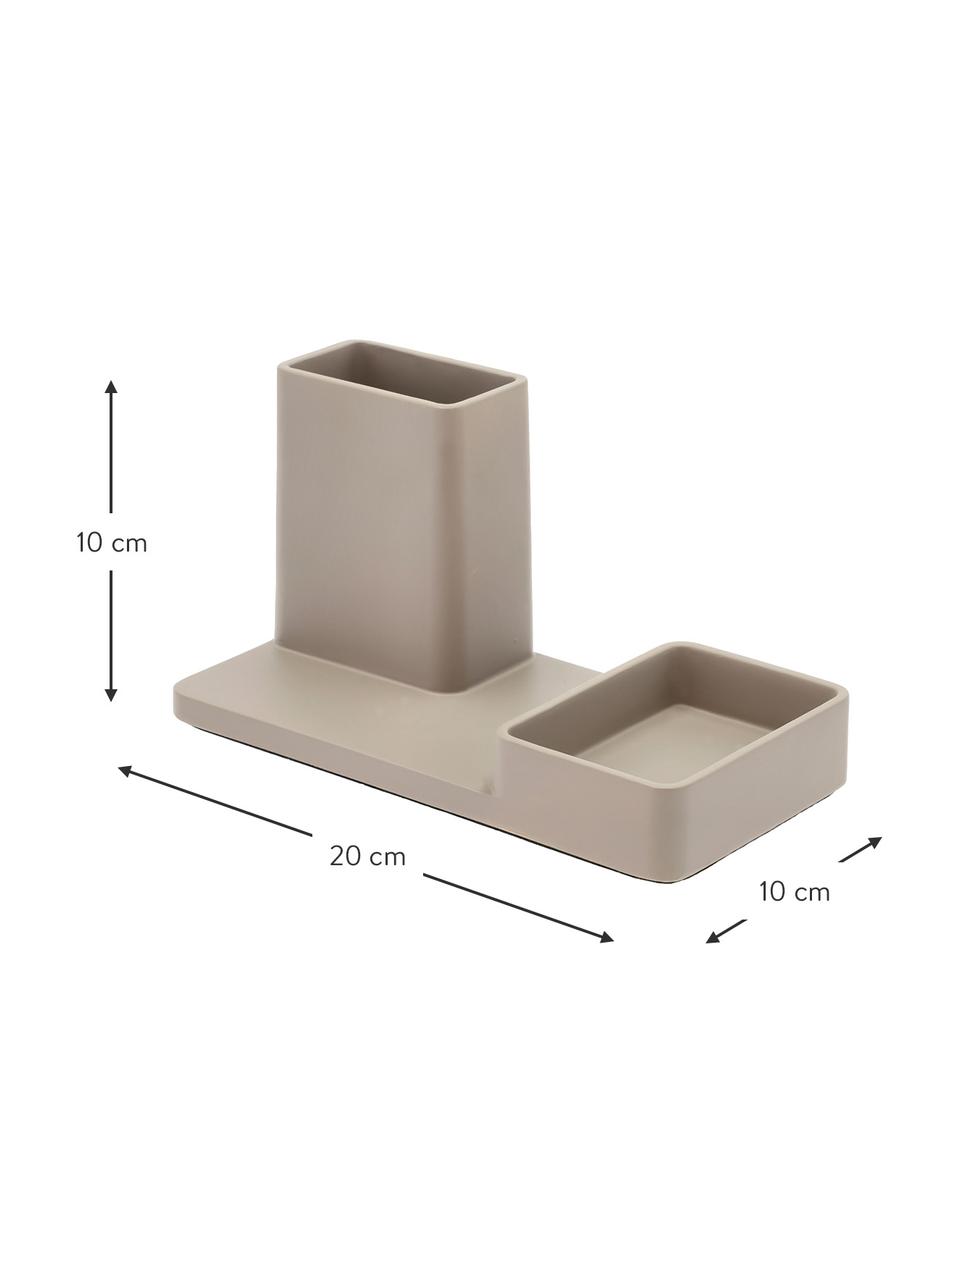 Przybornik na biurko Sement, Cement, Odcienie piaskowego, S 20 x W 10 cm